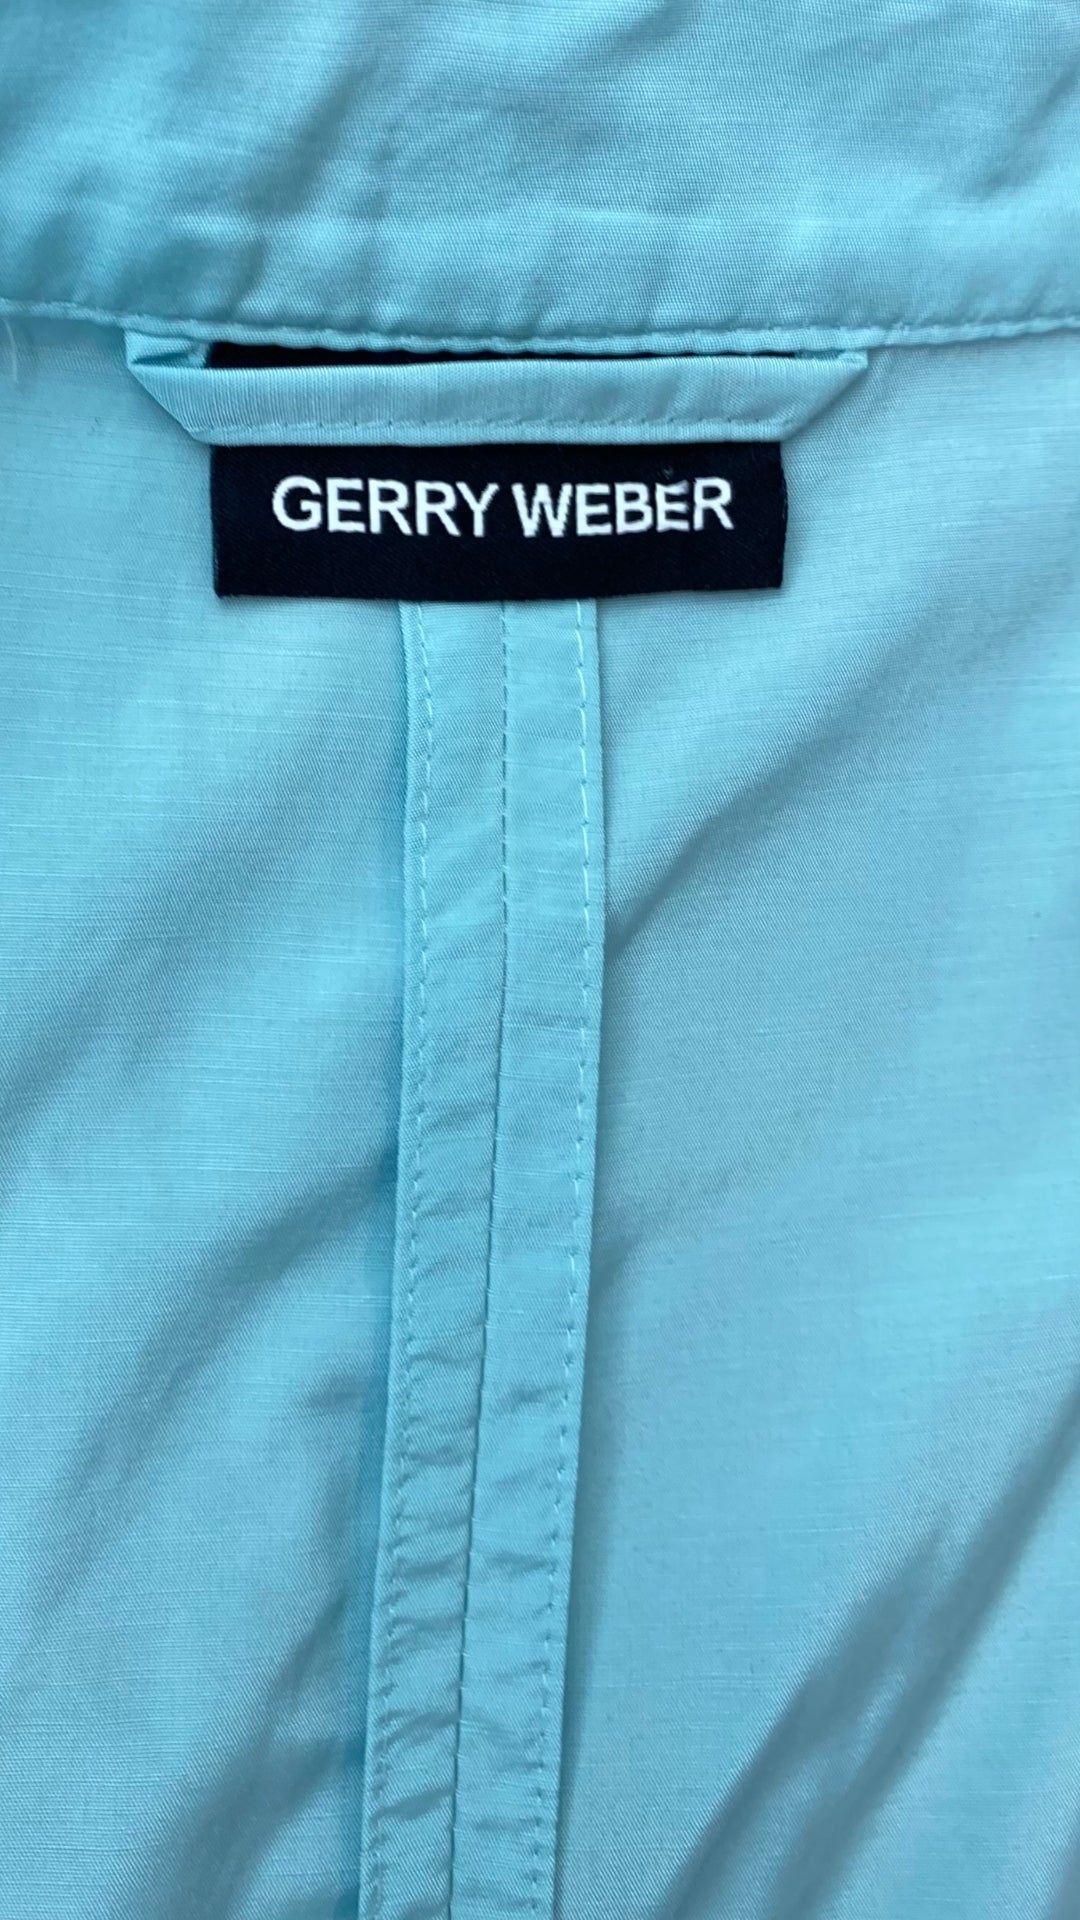 Veste légère aqua avec bouton en forme de fleur Gerry Weber, taille estimée medium. Vue de l'étiquette de marque.